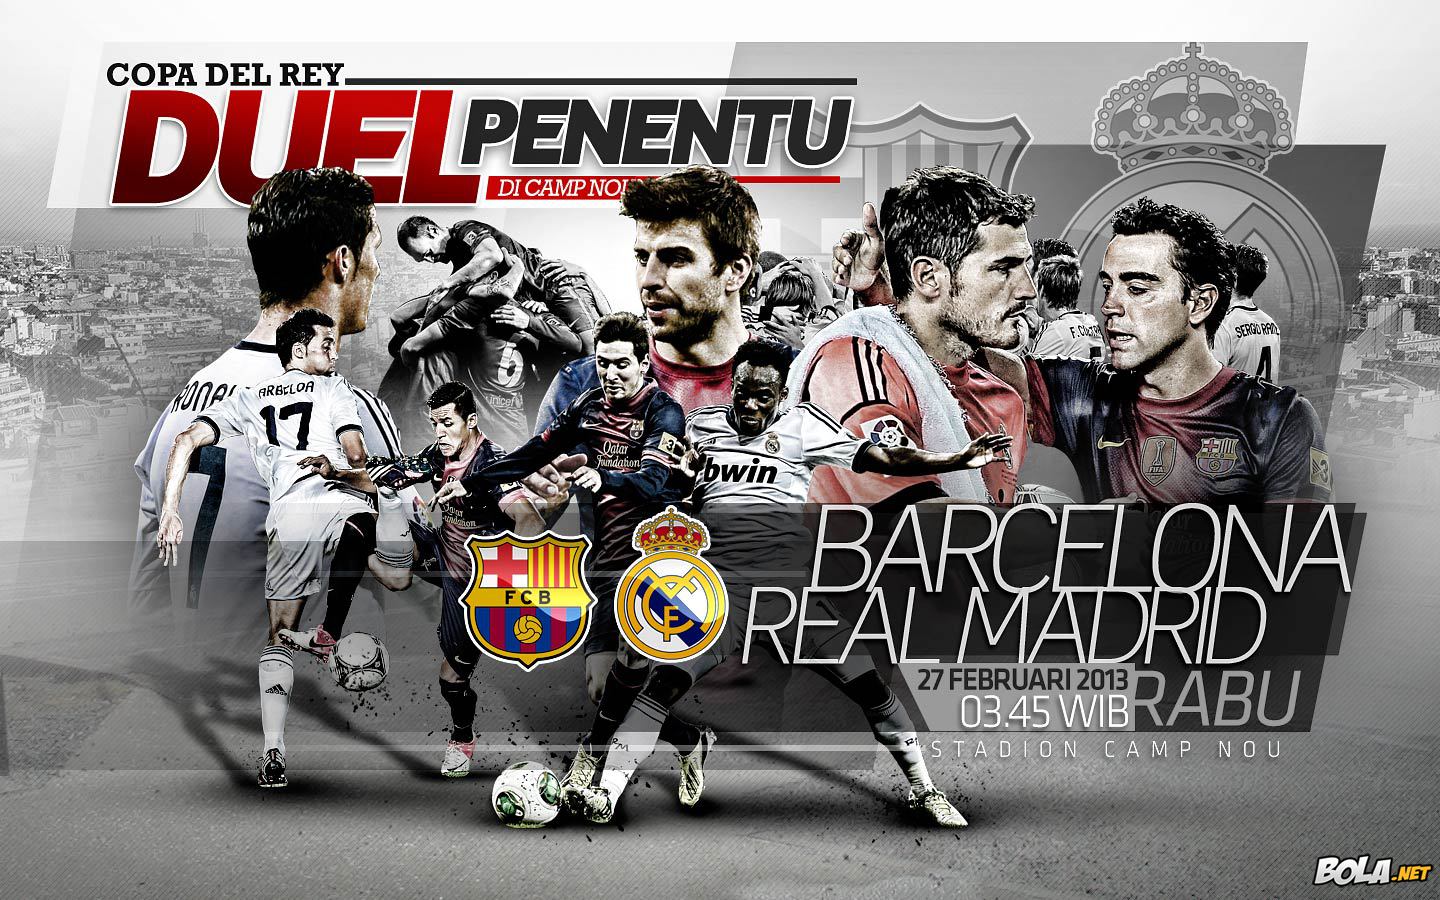 Download Wallpaper Terbaru Sepak Bola Edisi 18 Mei 2013 Prediksi